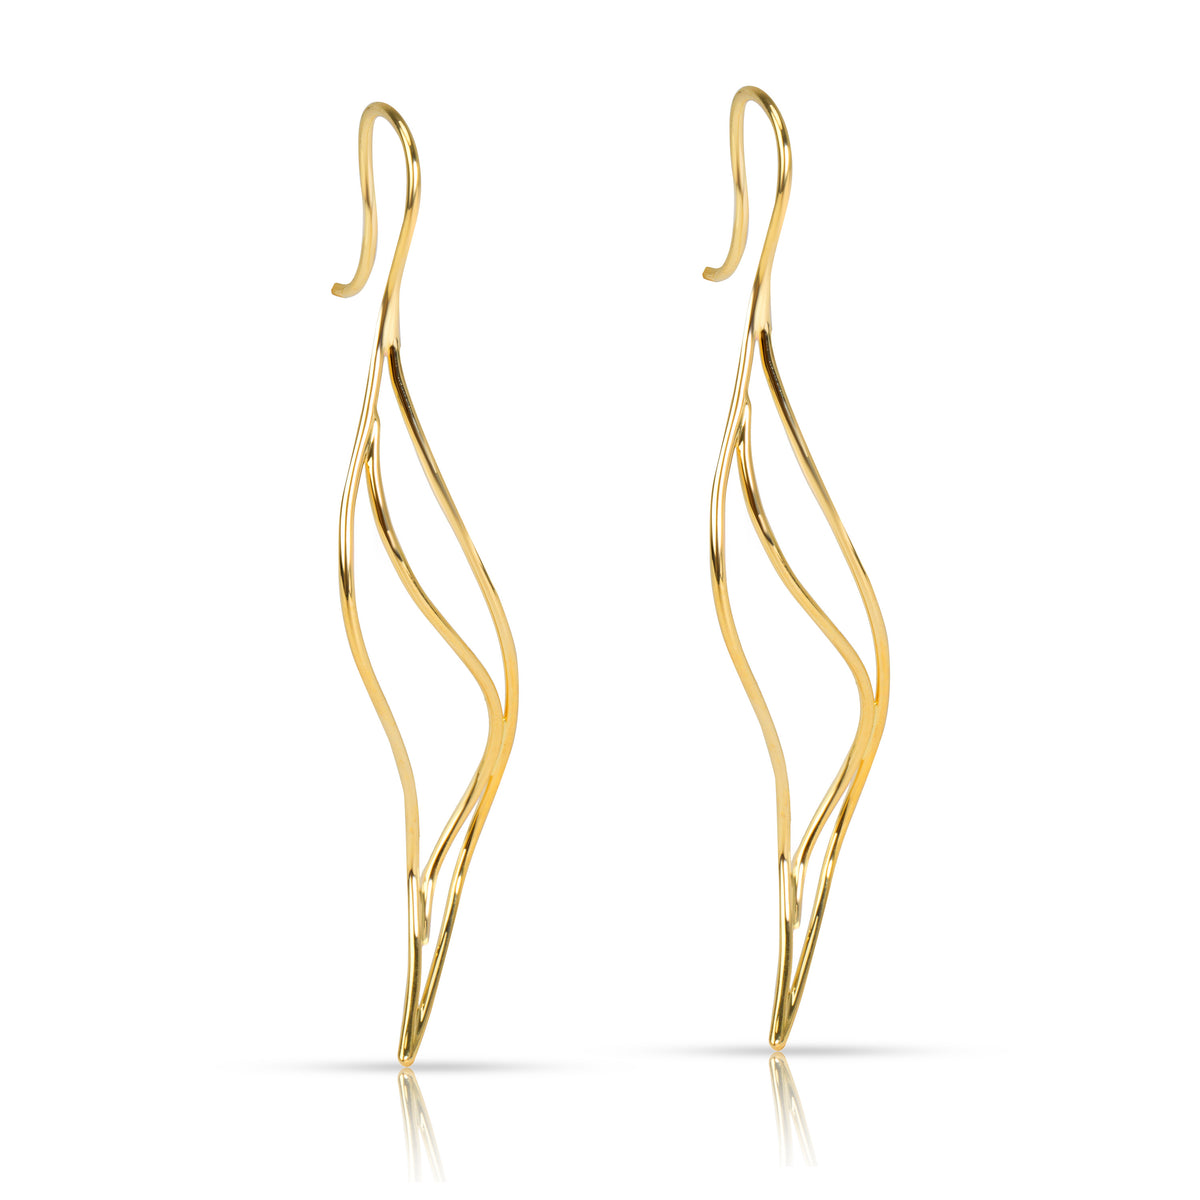 Tiffany & Co. Elsa Peretti Wave Earrings in 18K Yellow Gold